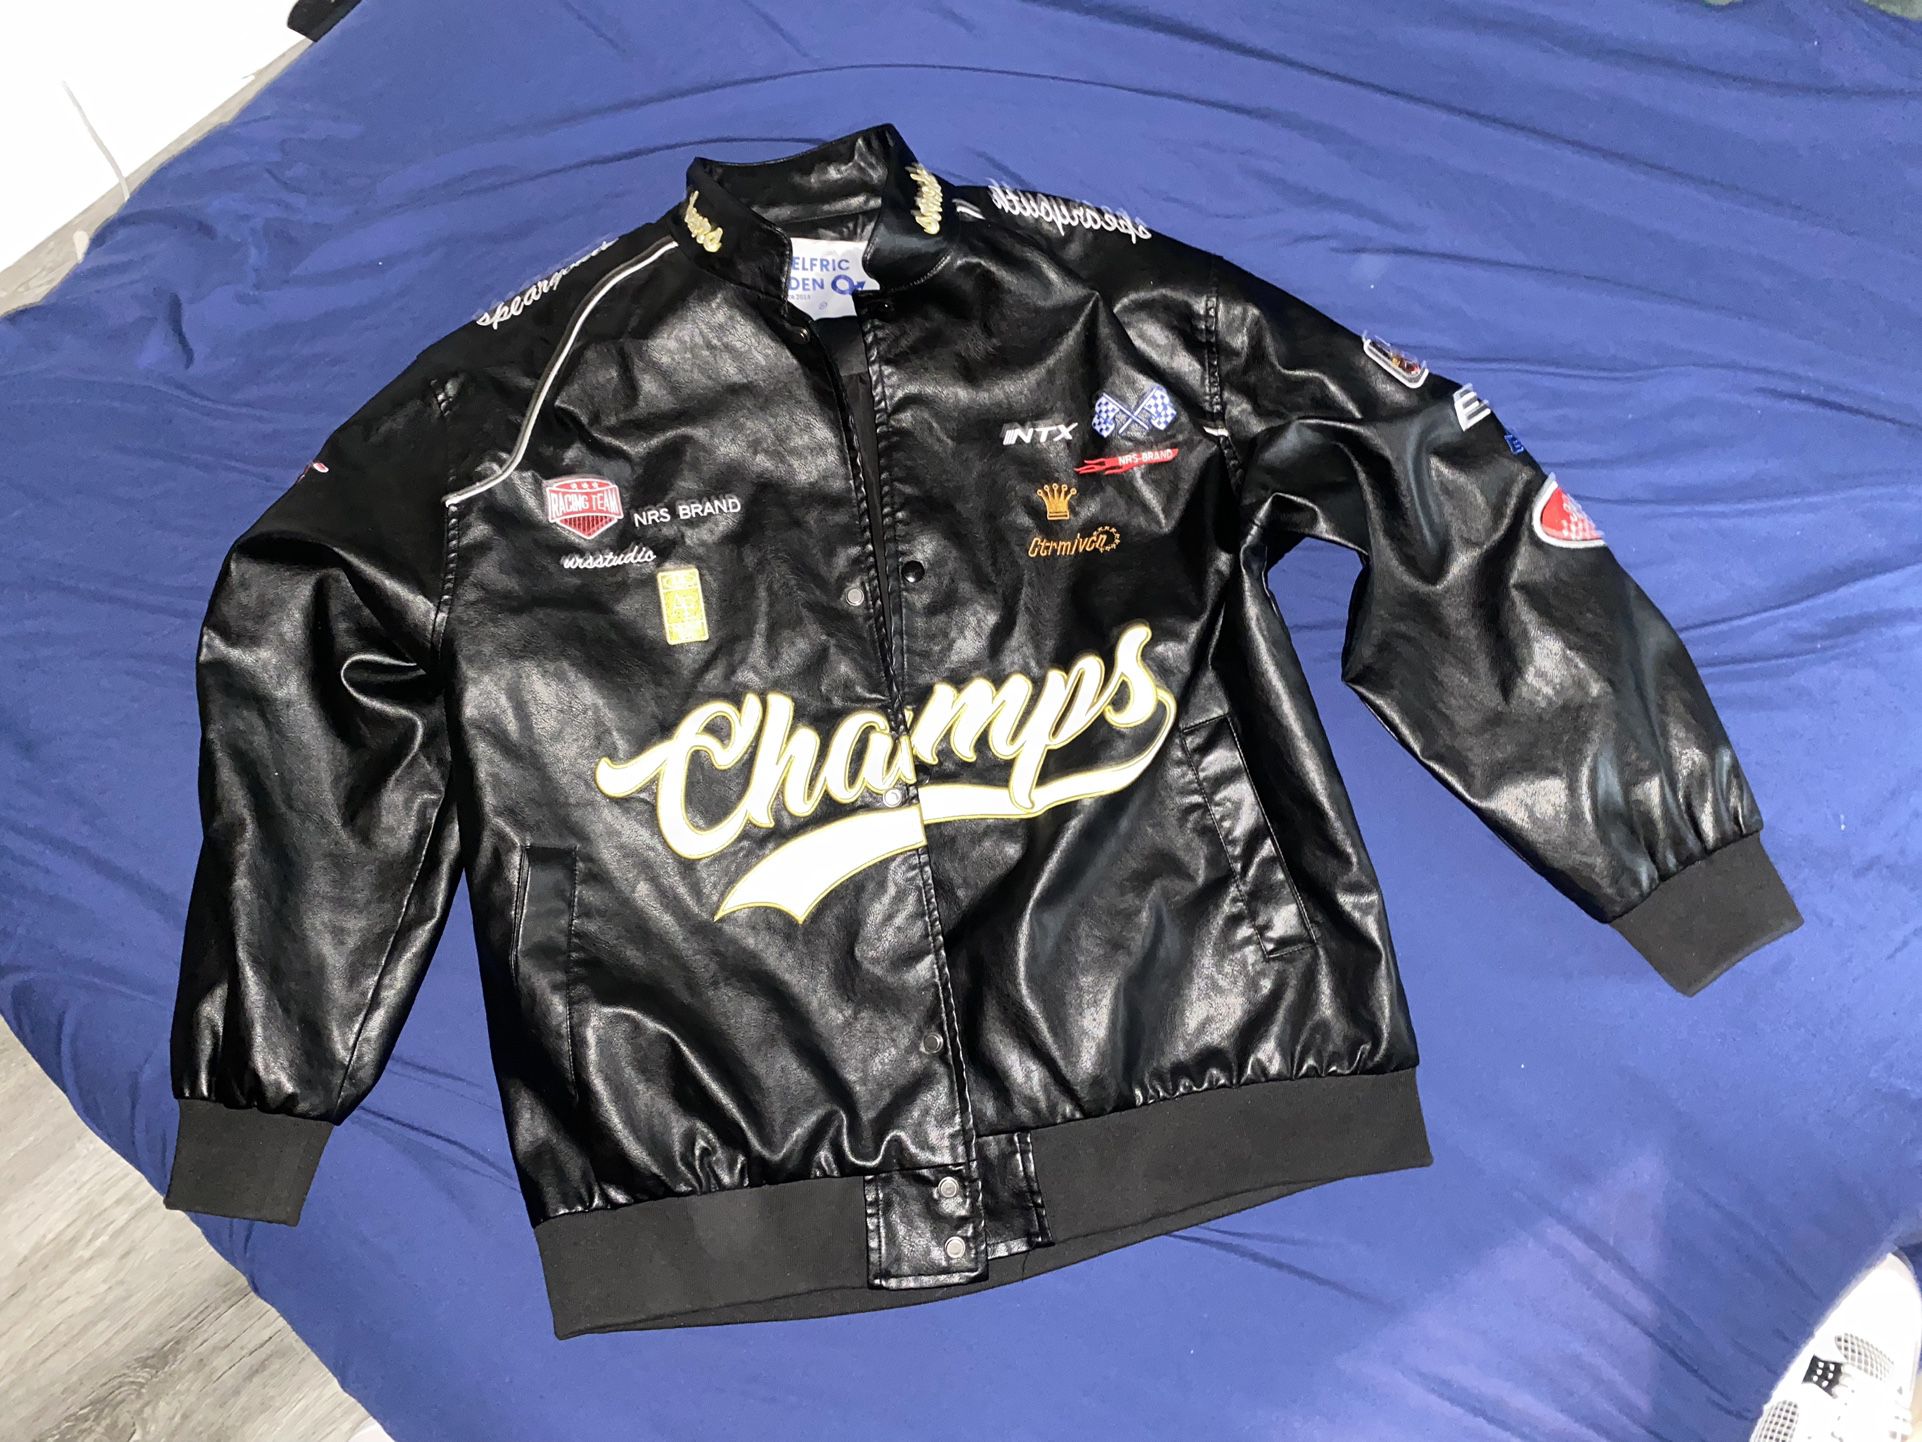 Black Varsity Leather Bomber Jacket